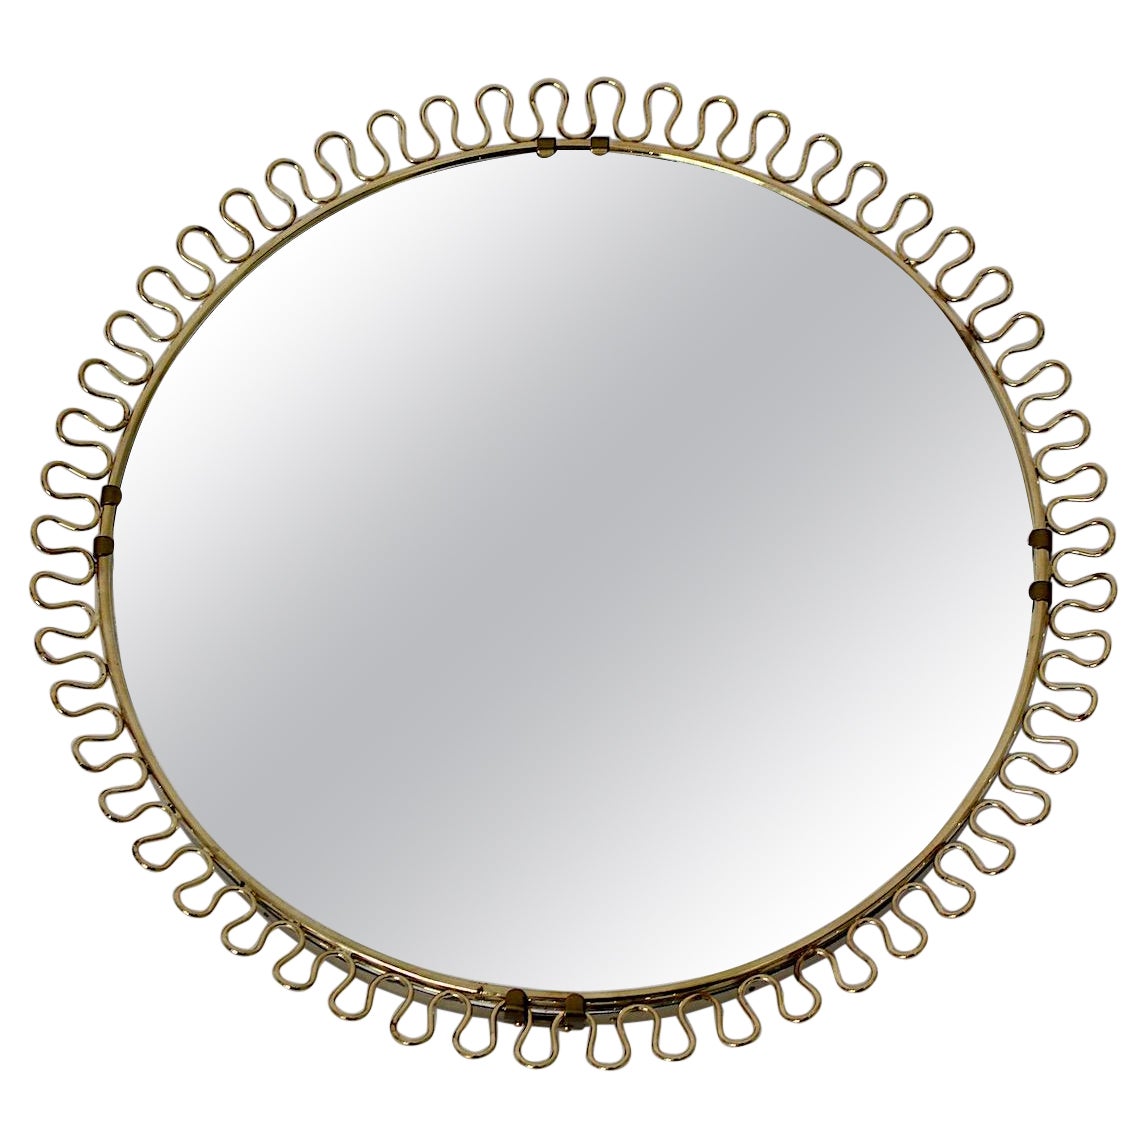 Mid-Century Modern Vintage Brassed Round Sunburst Wall Mirror Josef Frank Style